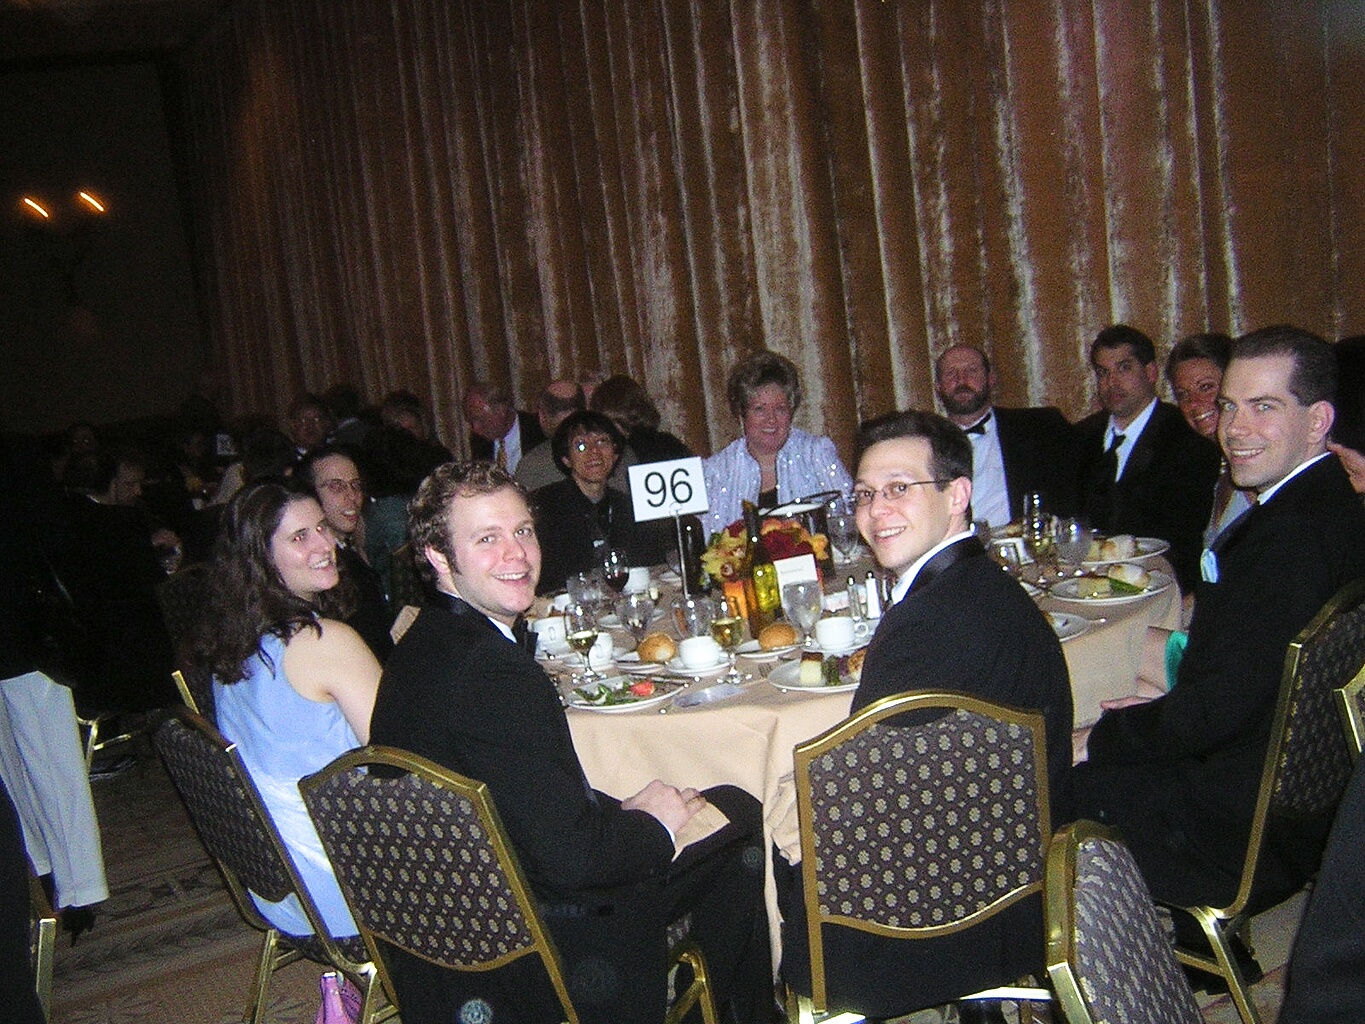 2004 WGA Ceremony at the Hotel Plaza in LA